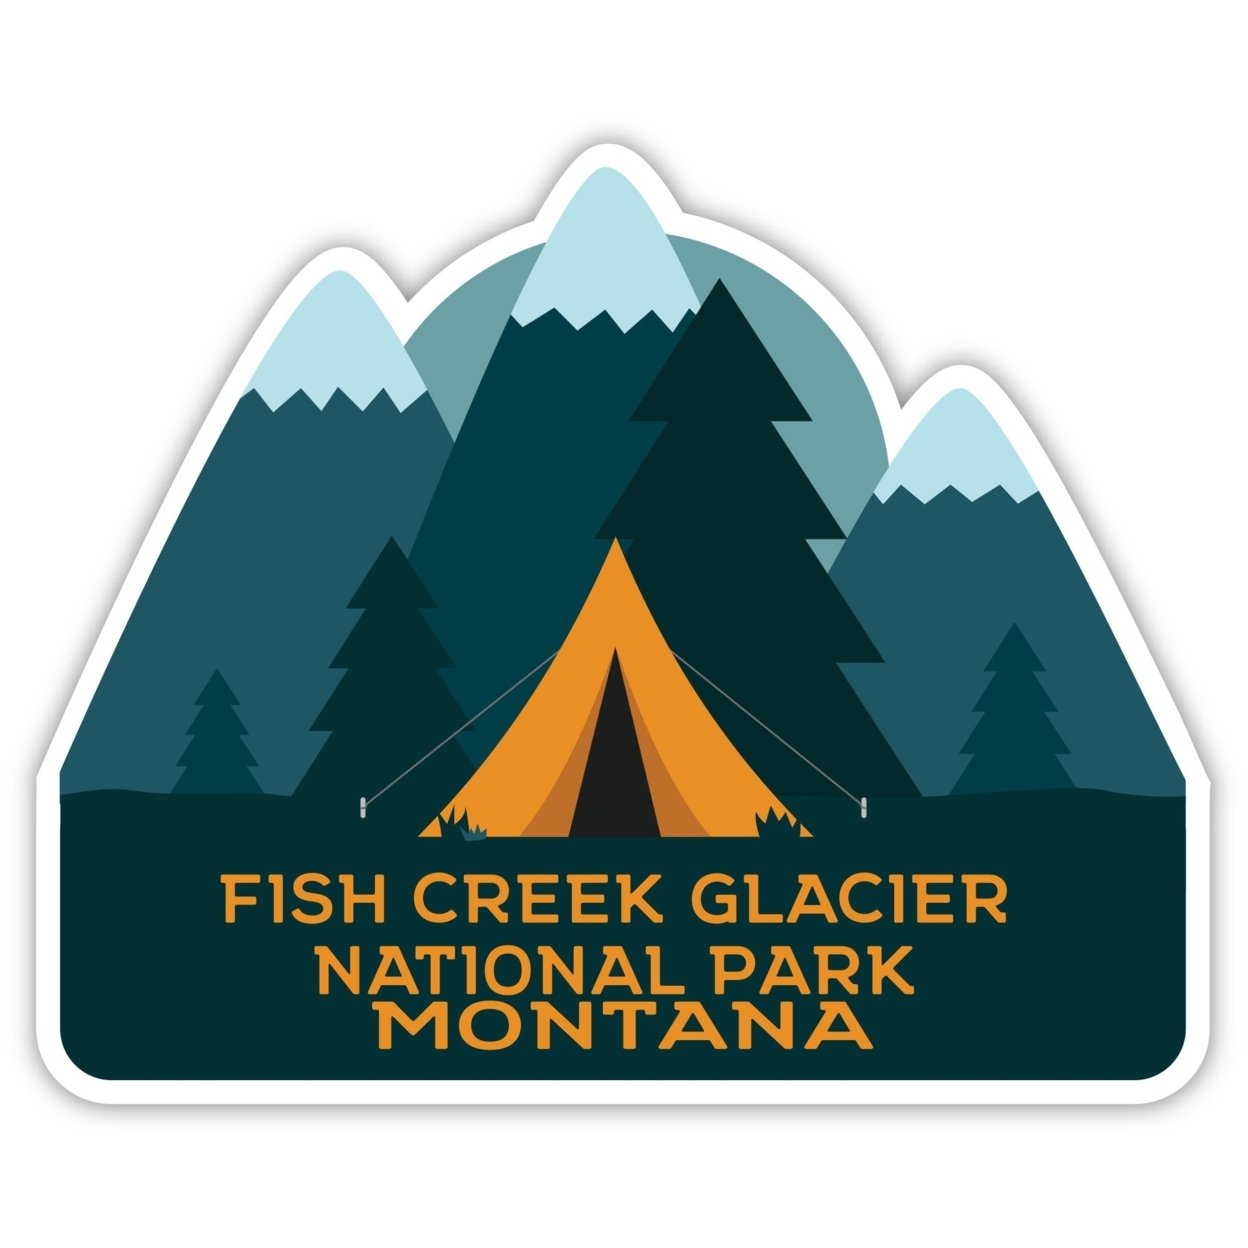 Fish Creek Glacier National Park Montana Souvenir Decorative Stickers (Choose Theme And Size) - Single Unit, 10-Inch, Tent